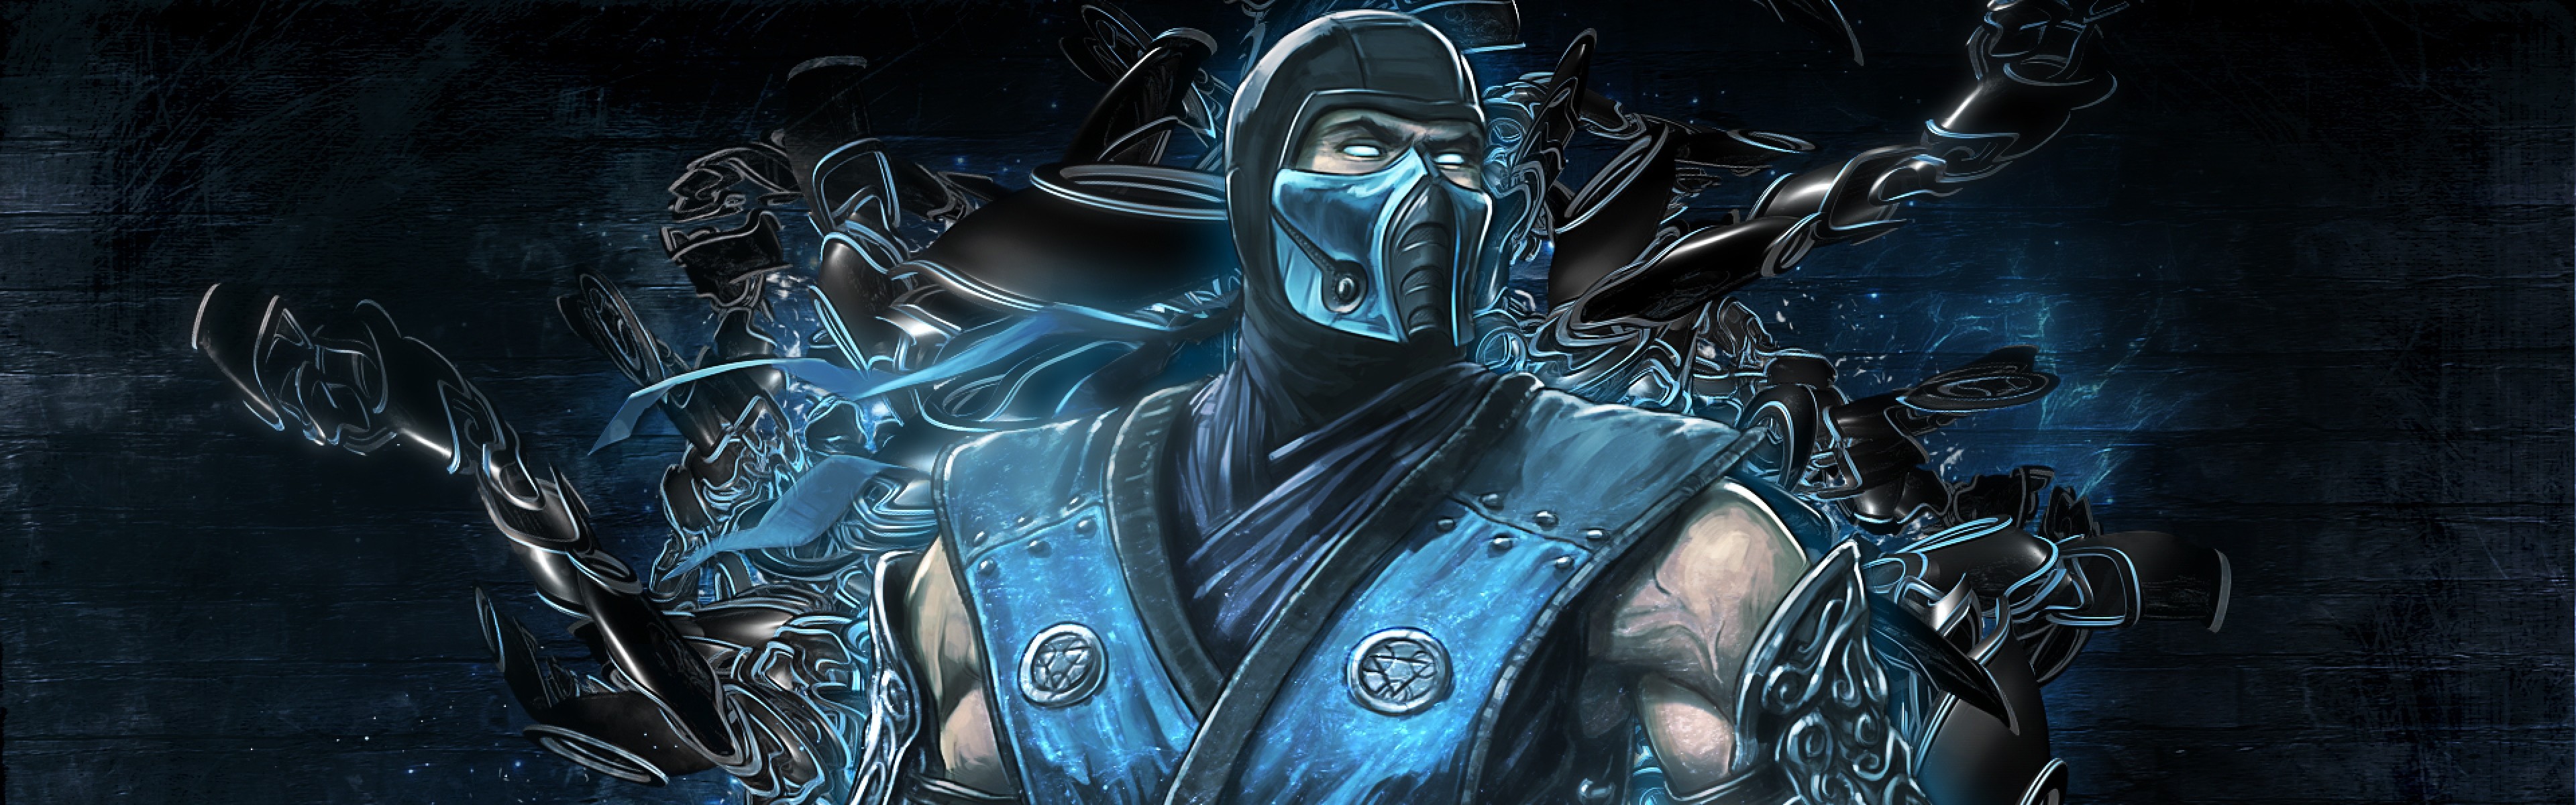 3840x1200 Mortal Kombat Sub Zero Wallpaper : Find best latest Mortal Kombat Sub Zero  Wallpaper in HD